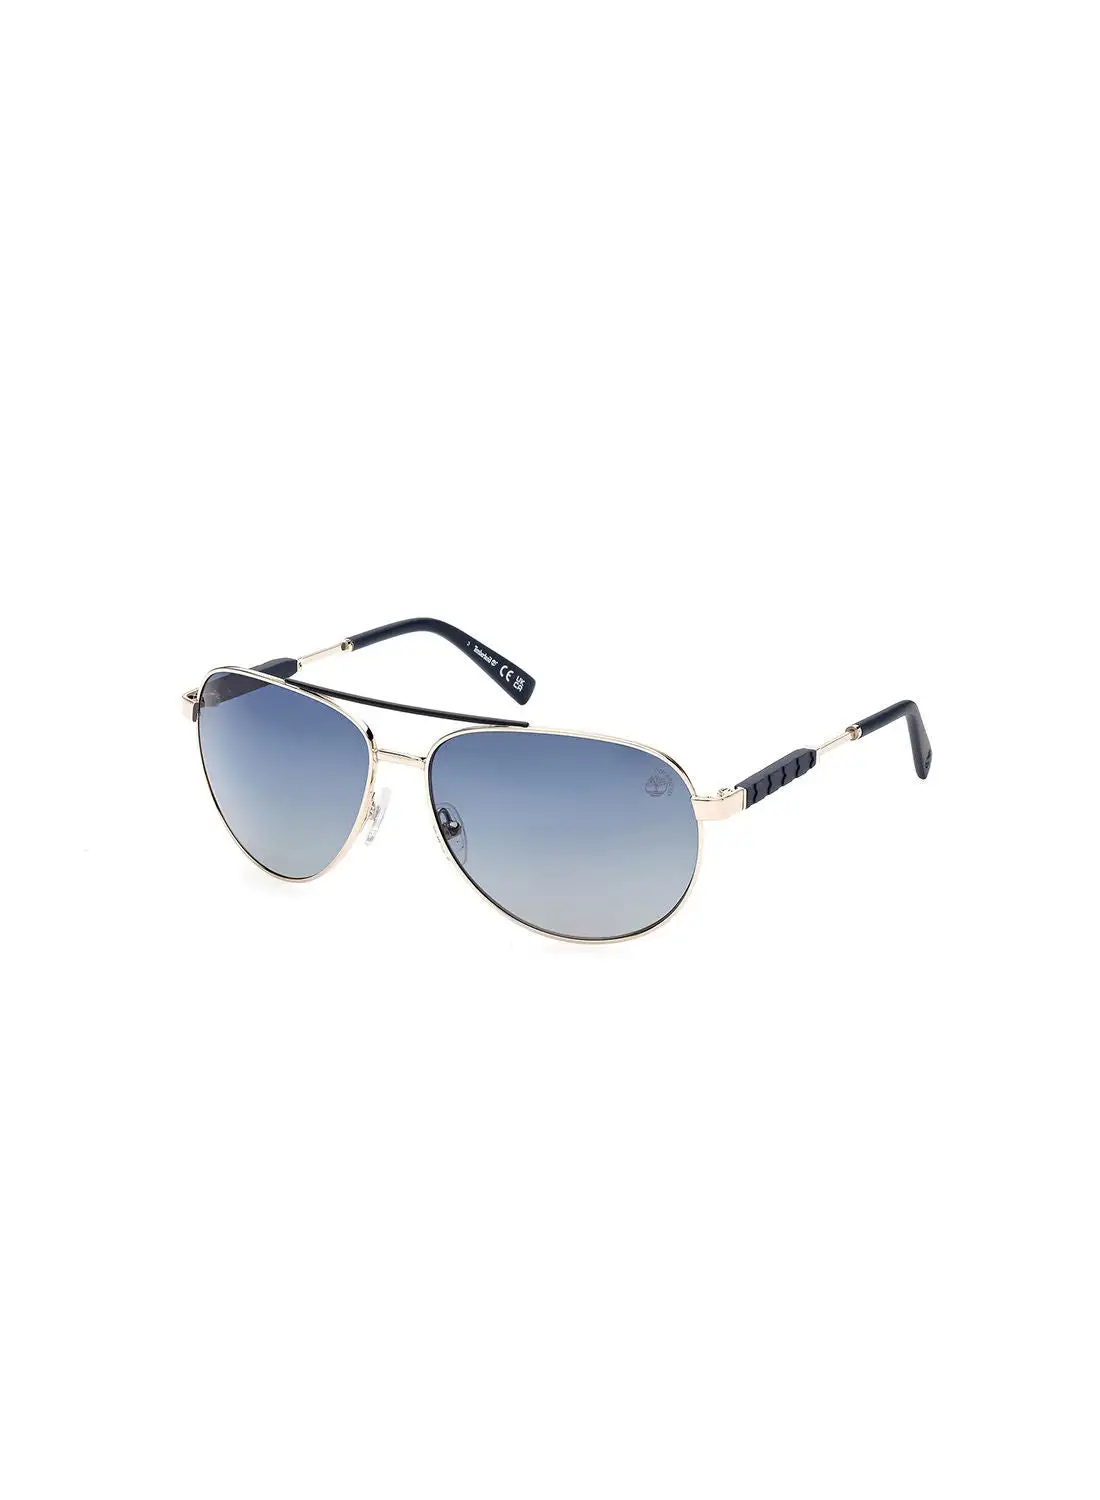 Timberland Men's Polarized Pilot Sunglasses - TB928232D61 - Lens Size: 61 Mm